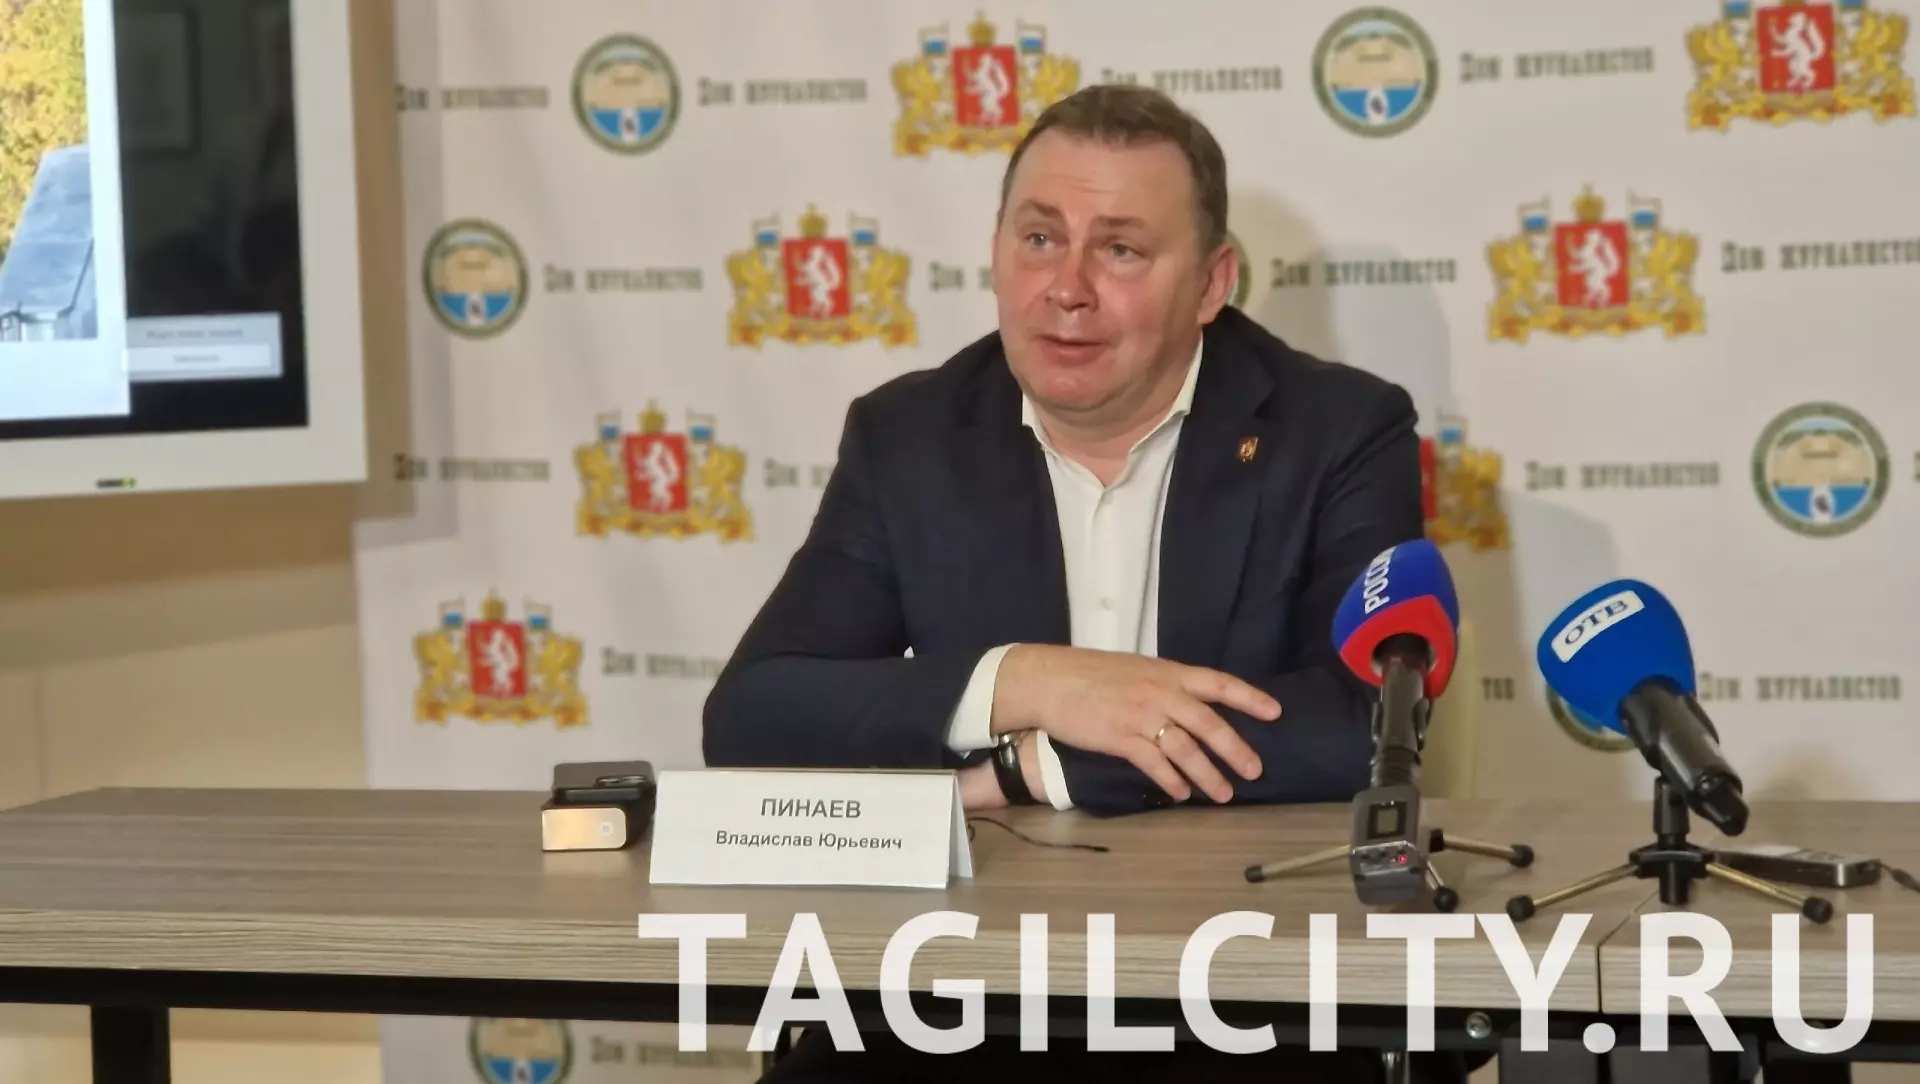 Мэр Нижнего Тагила рассказал о планах развития города на ближайшие пять лет